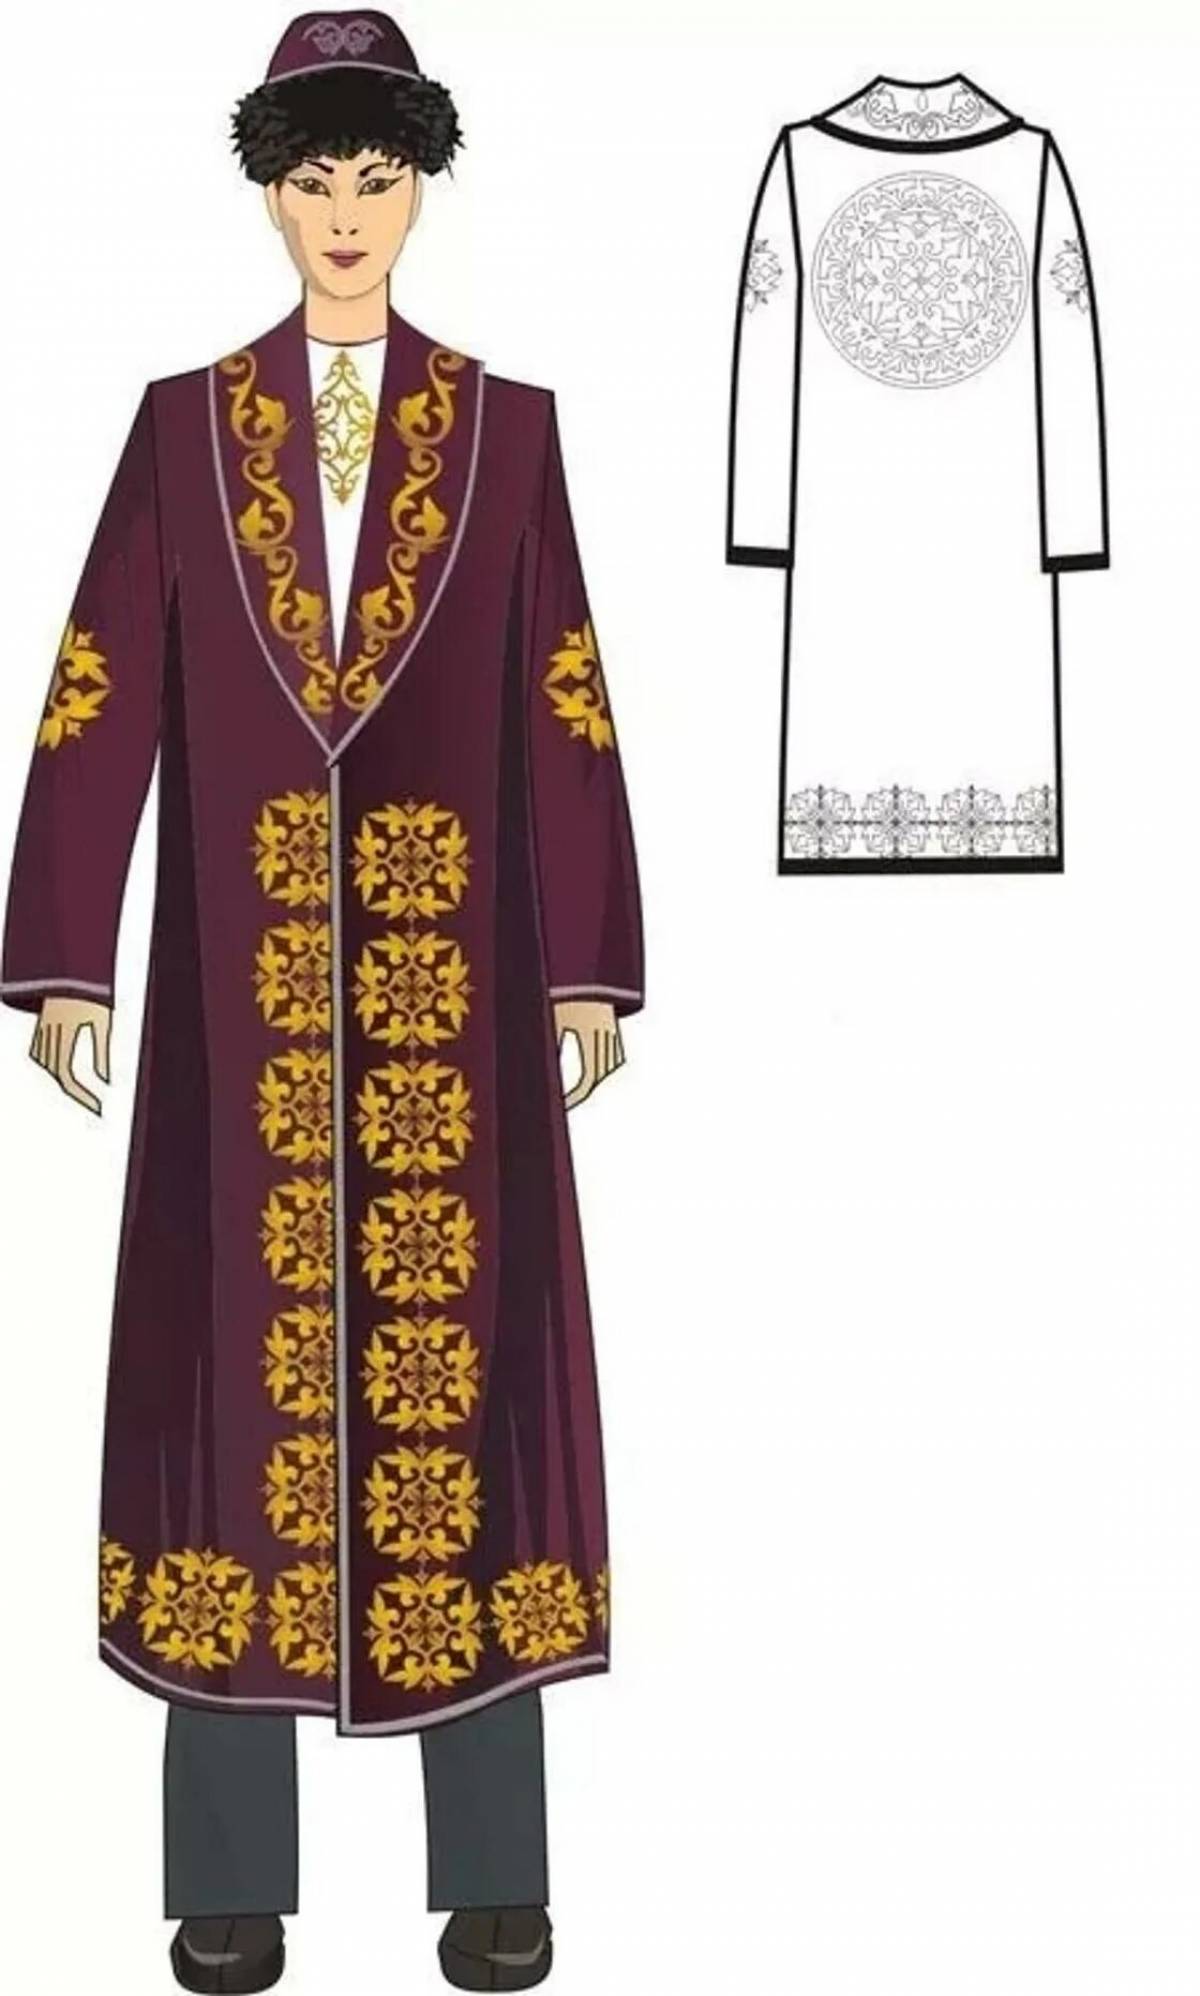 Fashionable Kazakh coloring camisole